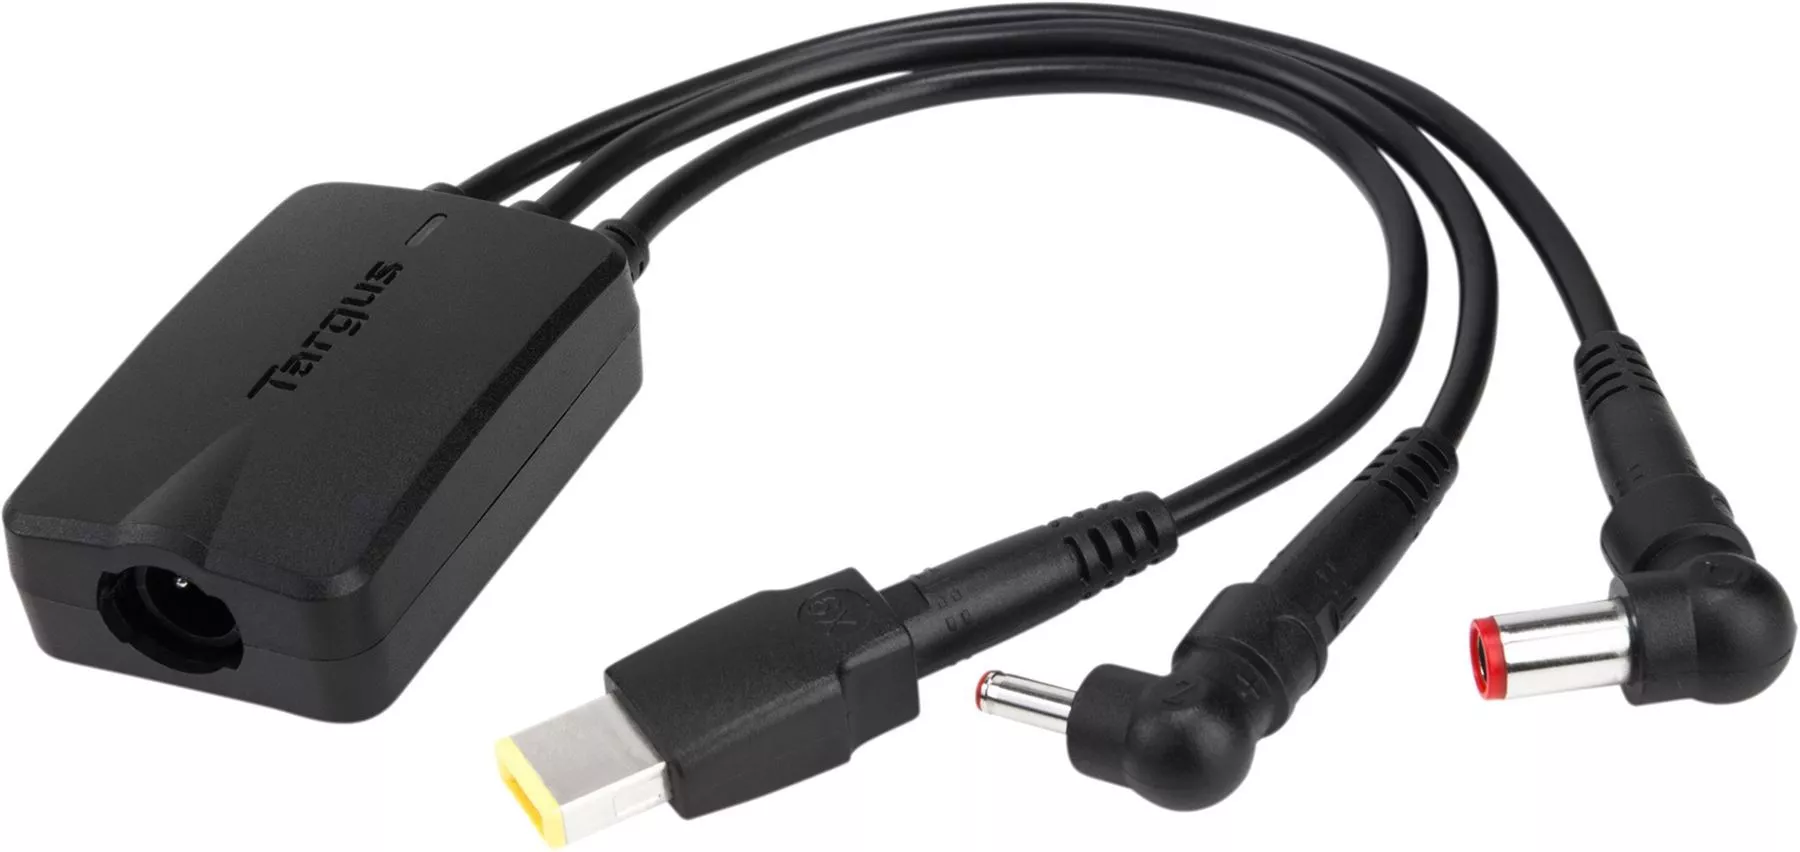 Achat TARGUS 3-Way DC Charging Hydra Cable 3 Pin Black et autres produits de la marque Targus